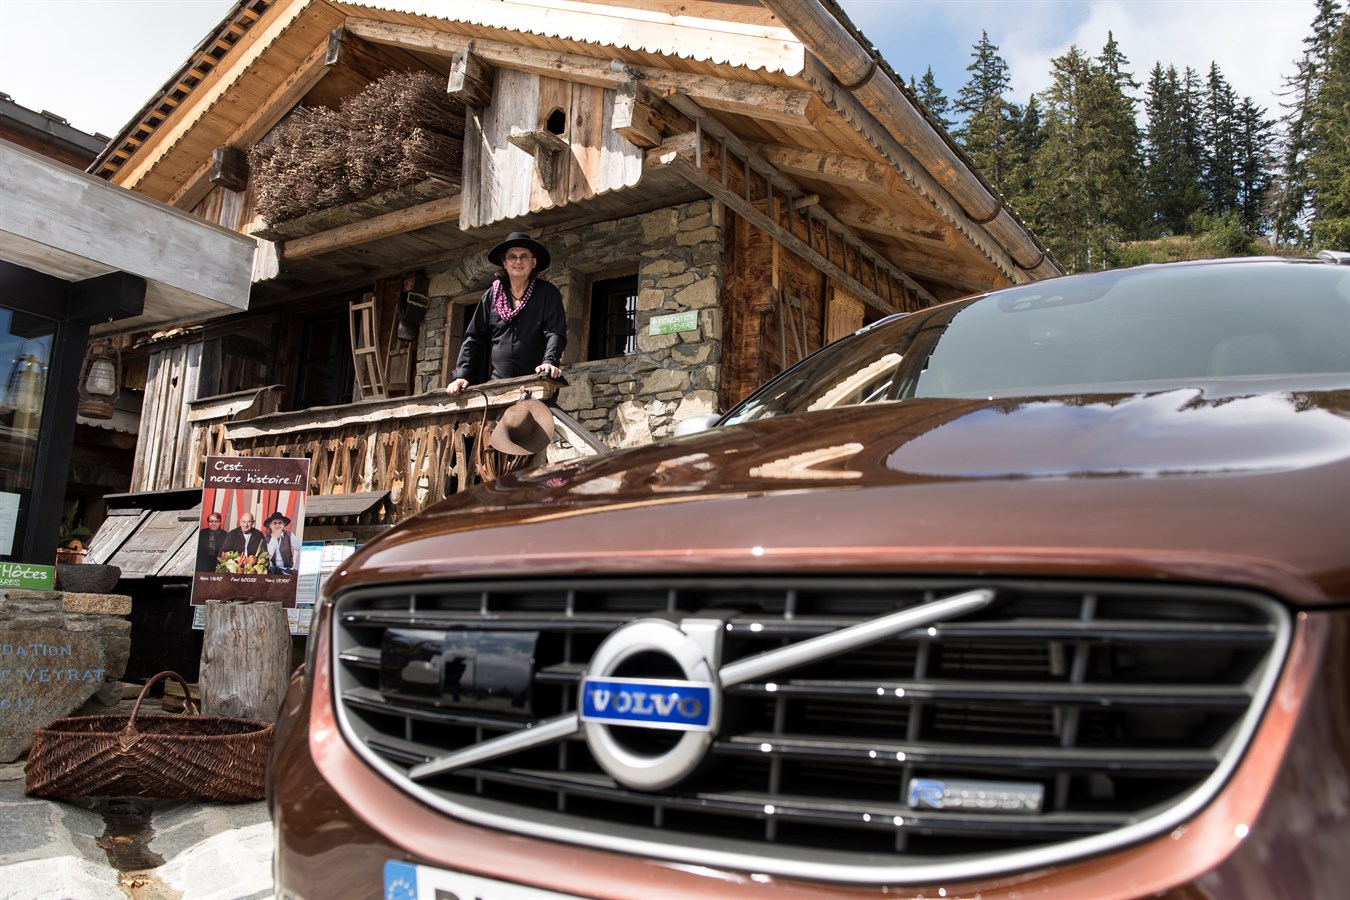 Volvo XC60 gamme Drive-E année modèle 2015 - Marc Veyrat La Maison des Bois